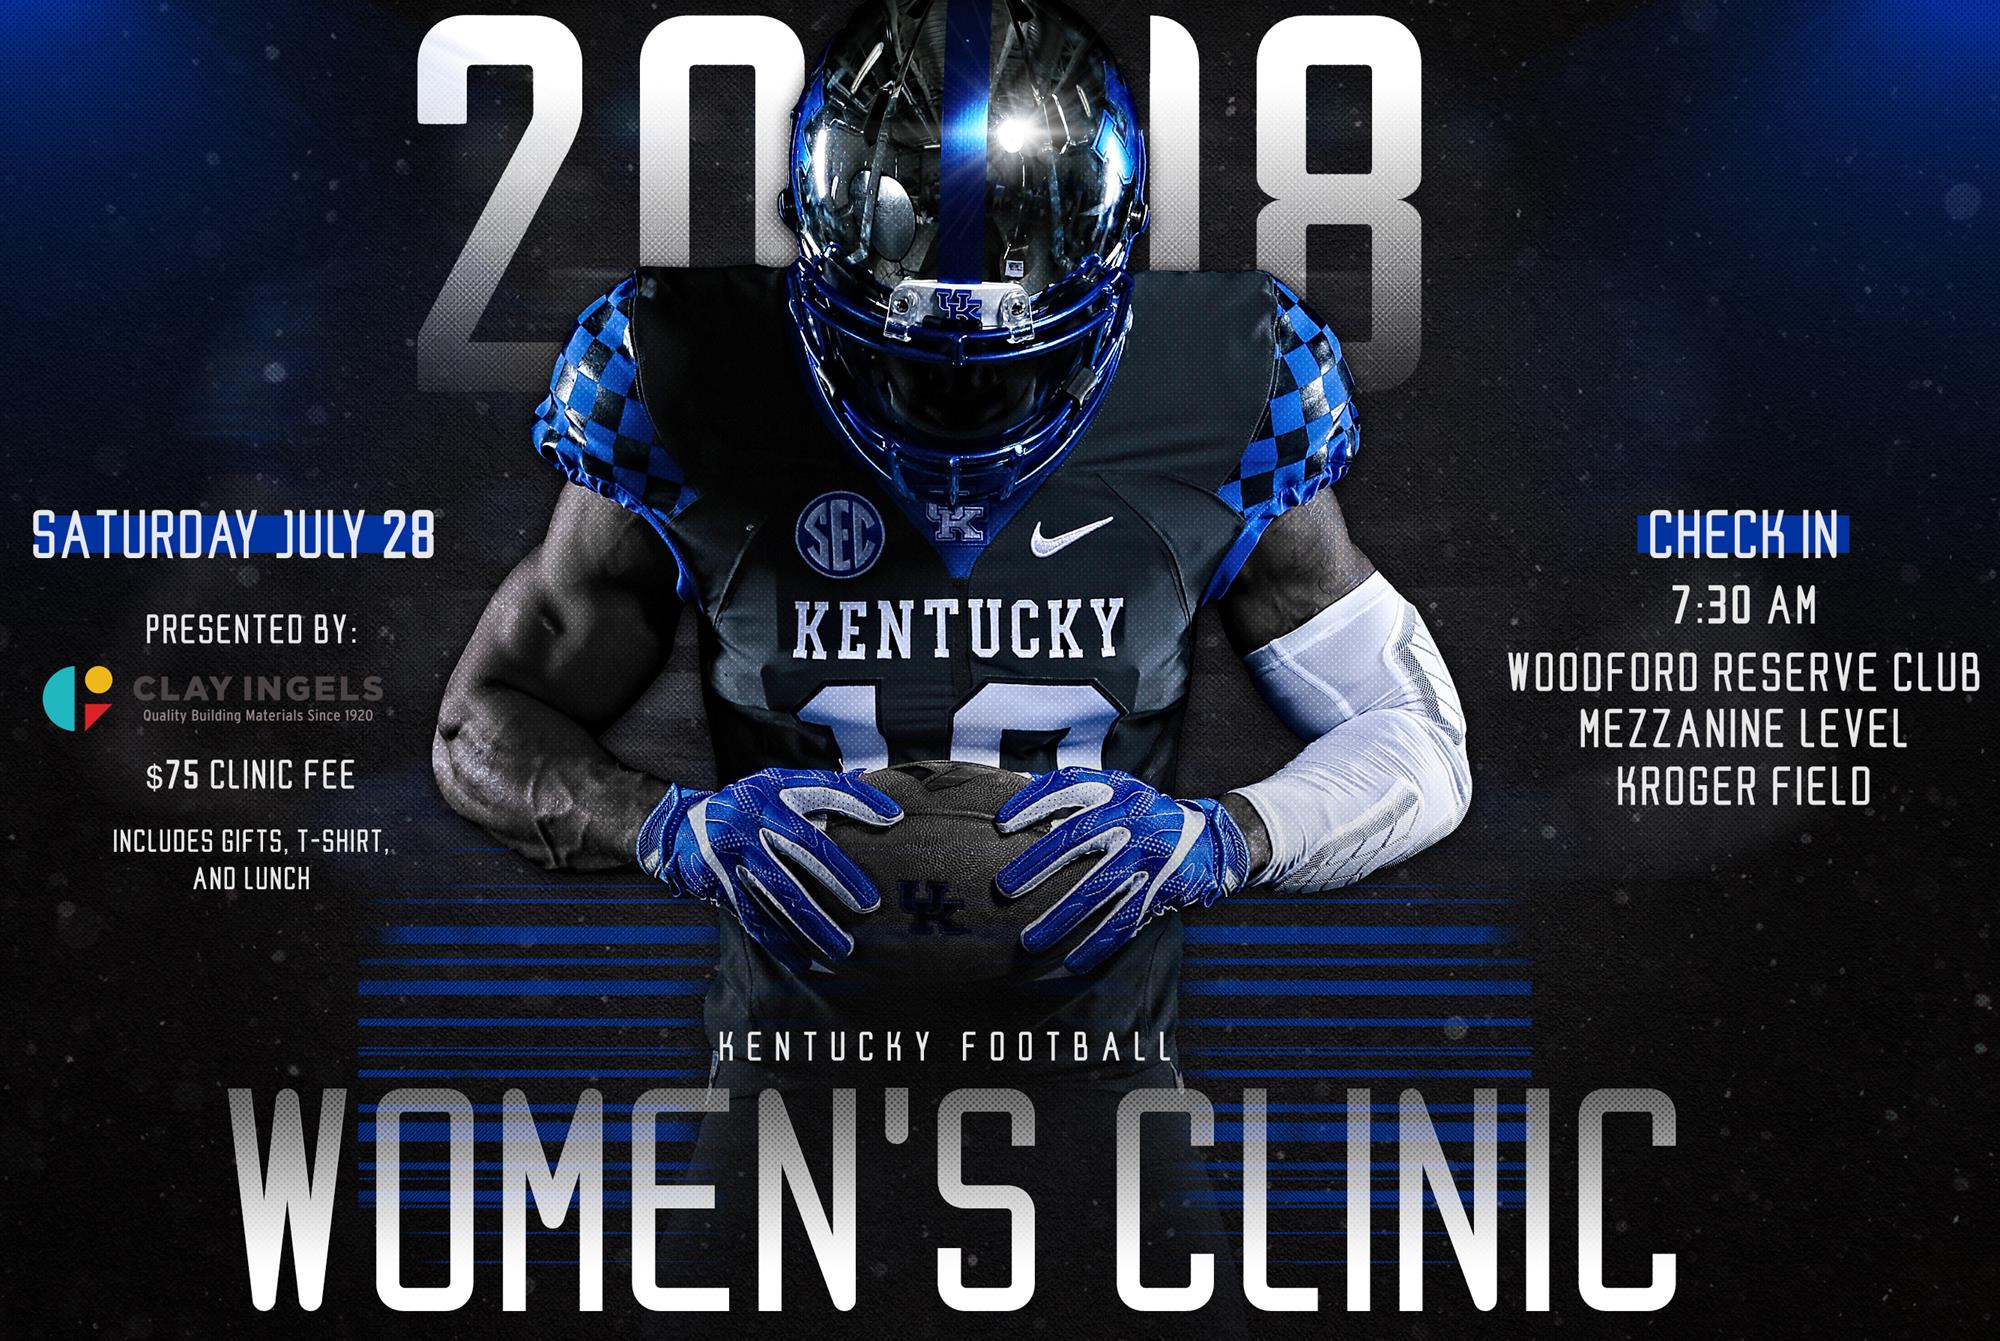 2018 Kentucky Football Women's Clinic